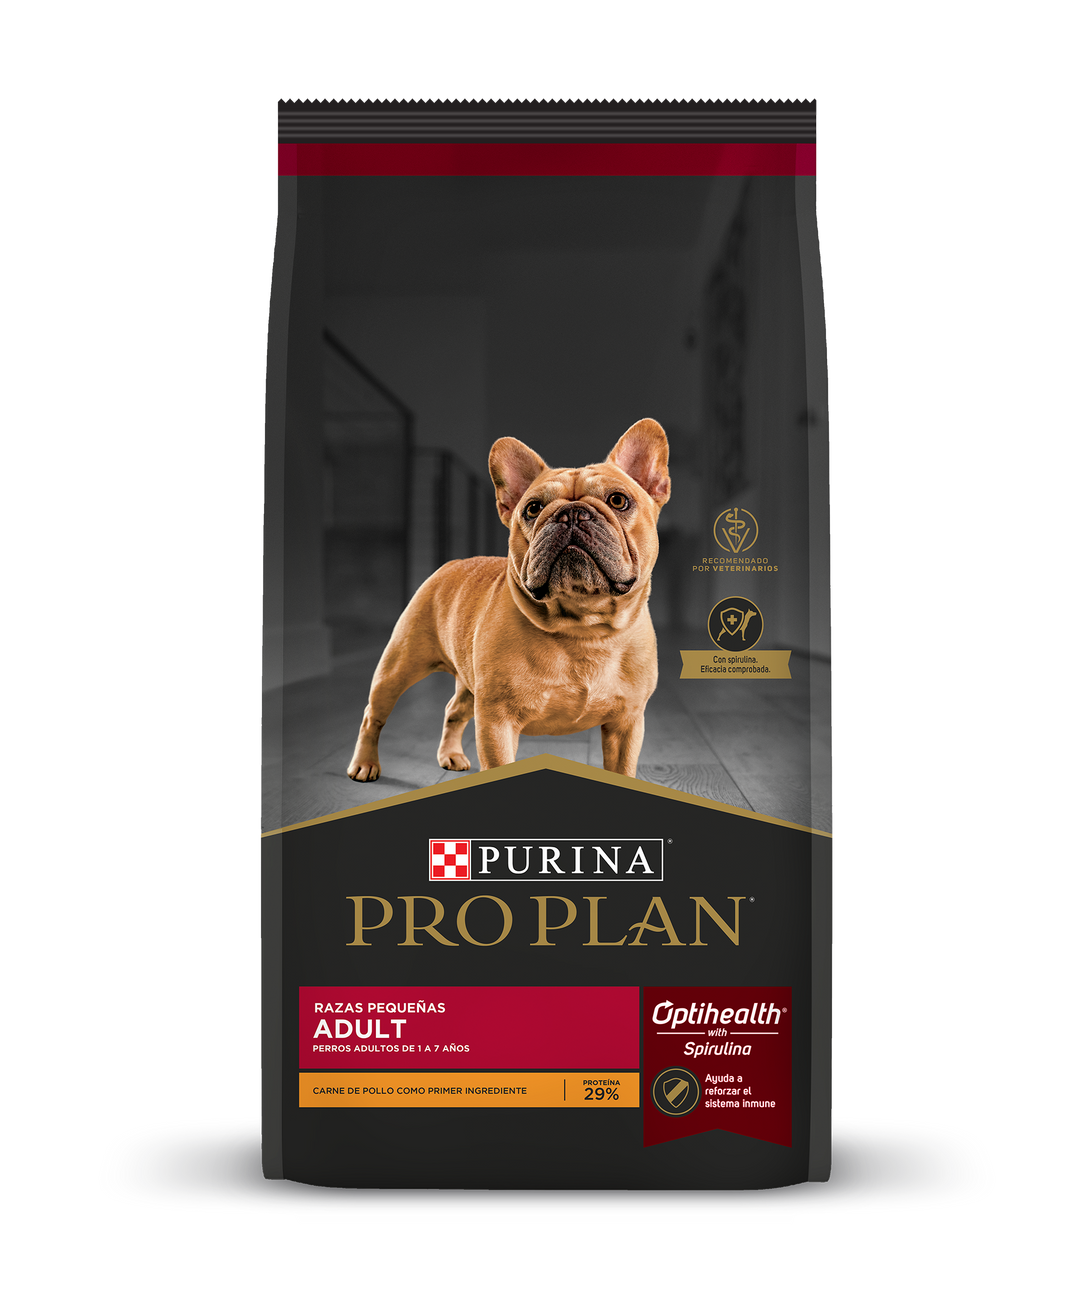 Pro Plan Optihealth Alimento Seco para Perro Adulto Raza Pequeña Receta Pollo y Arroz, 1 kg, 3.5 kg y 7.5 kg